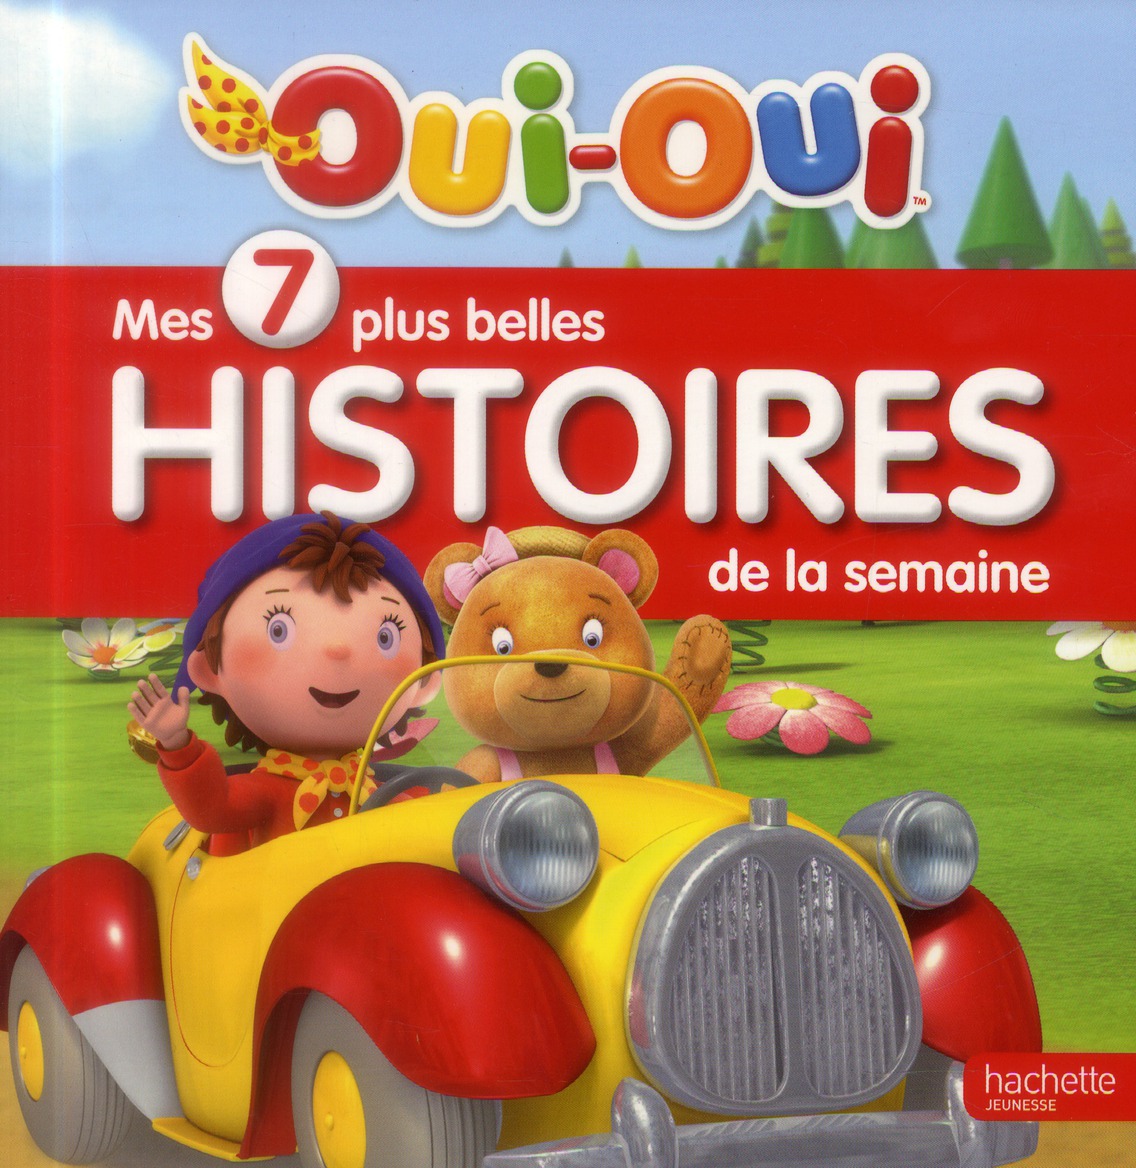 OUI-OUI - MES 7 PLUS BELLES HISTOIRES DE LA SEMAINE